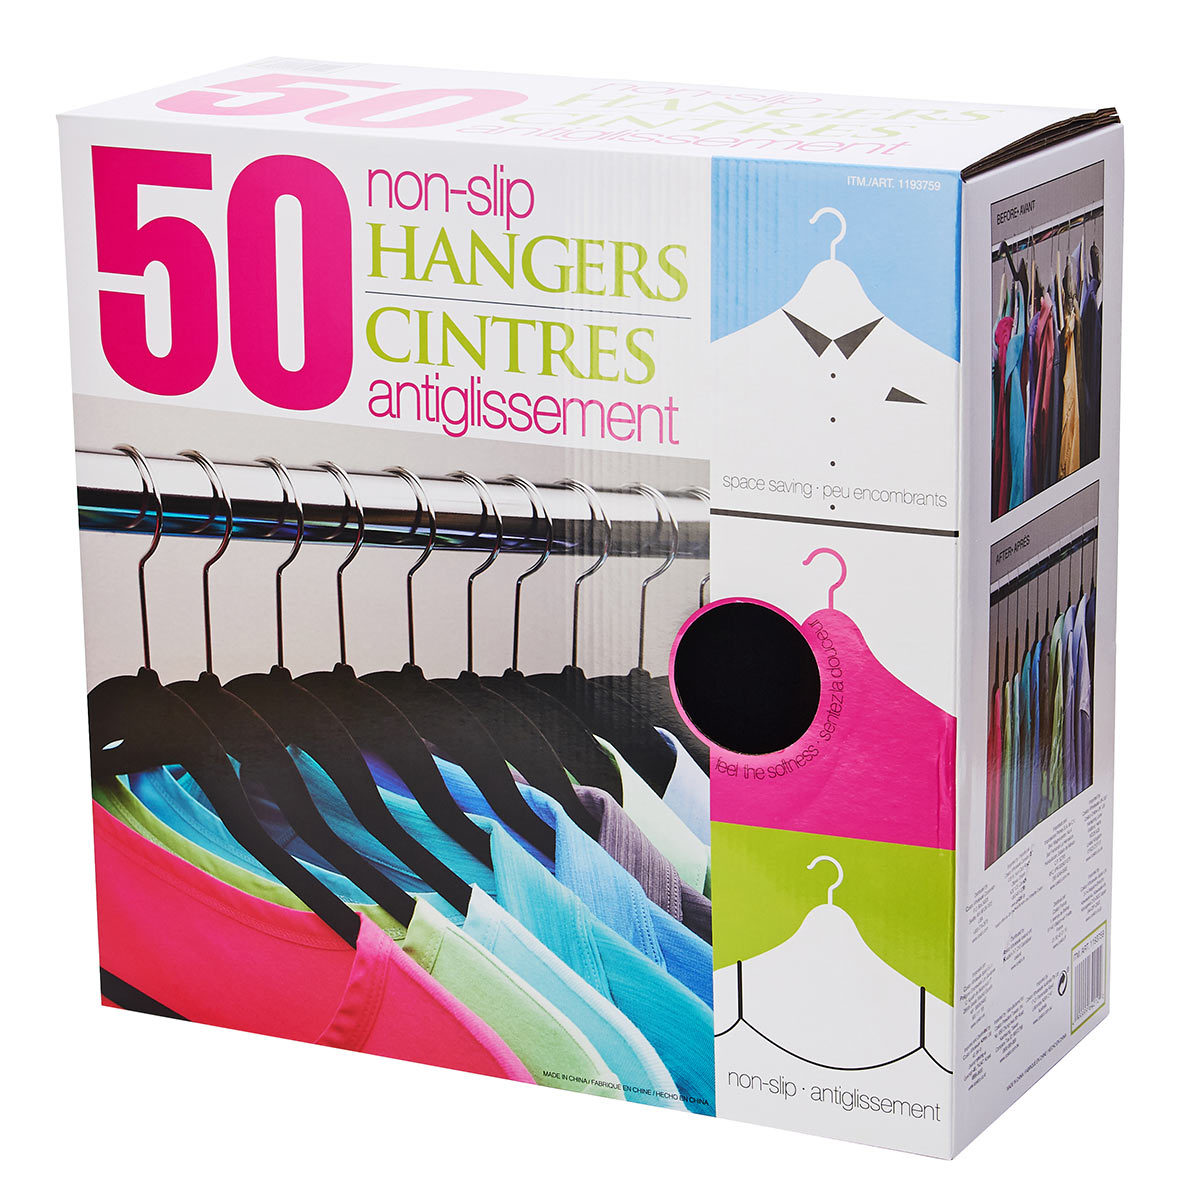 neatfreak 50-Pack Steel Non-slip Grip Clothing Hanger (Gray) at